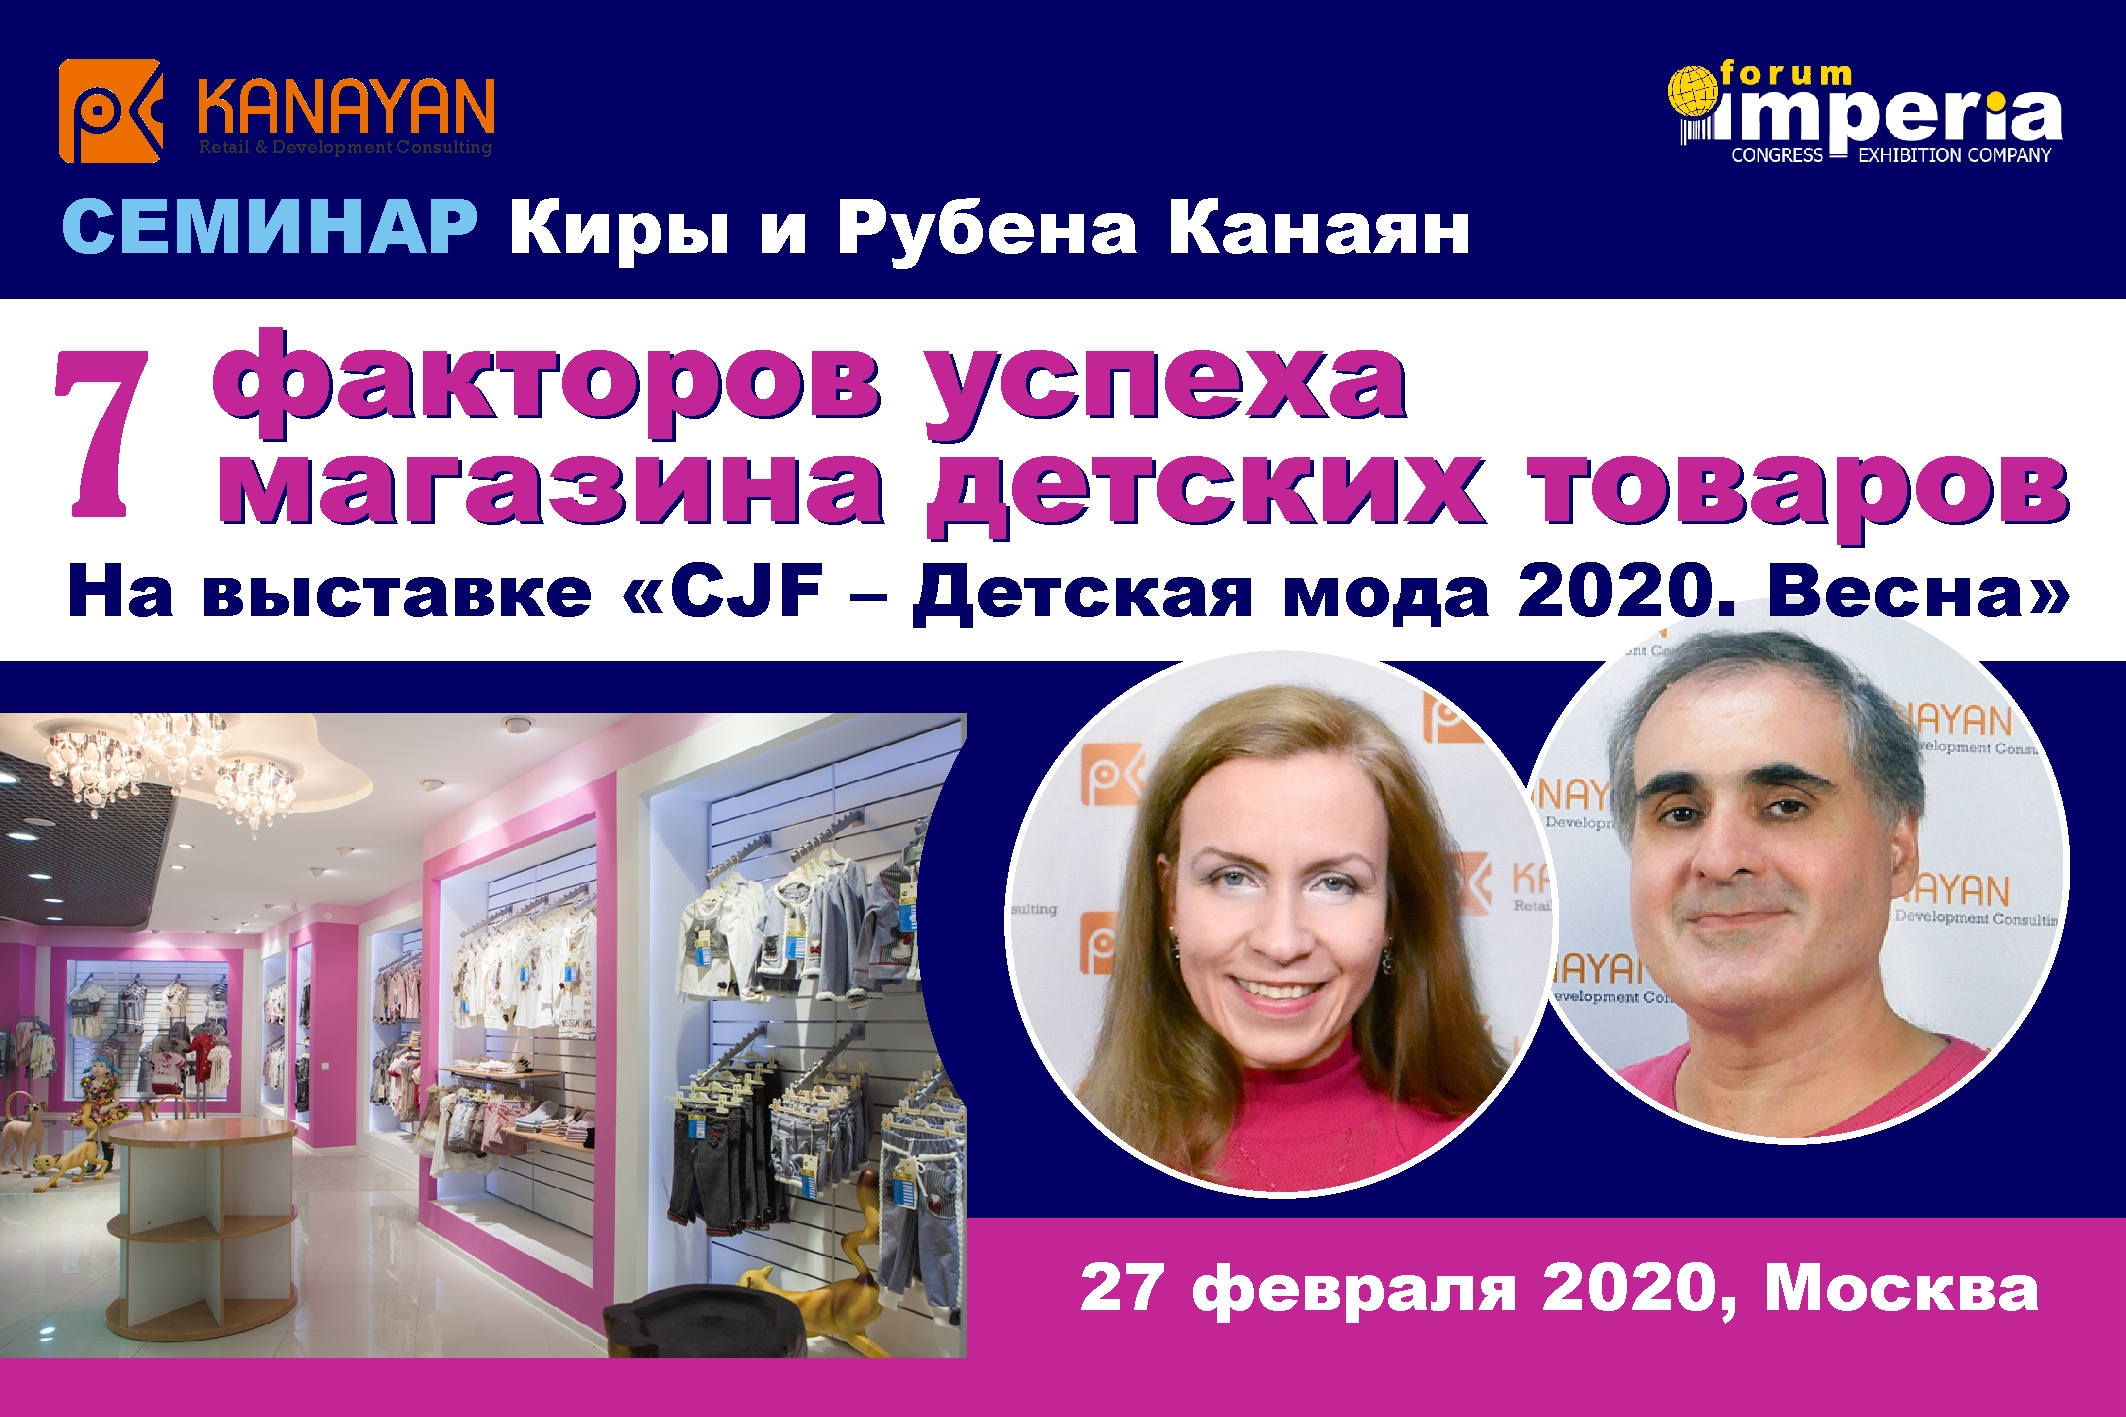 Как открыть магазин детских товаров - практический семинар Киры и Рубена Канаян